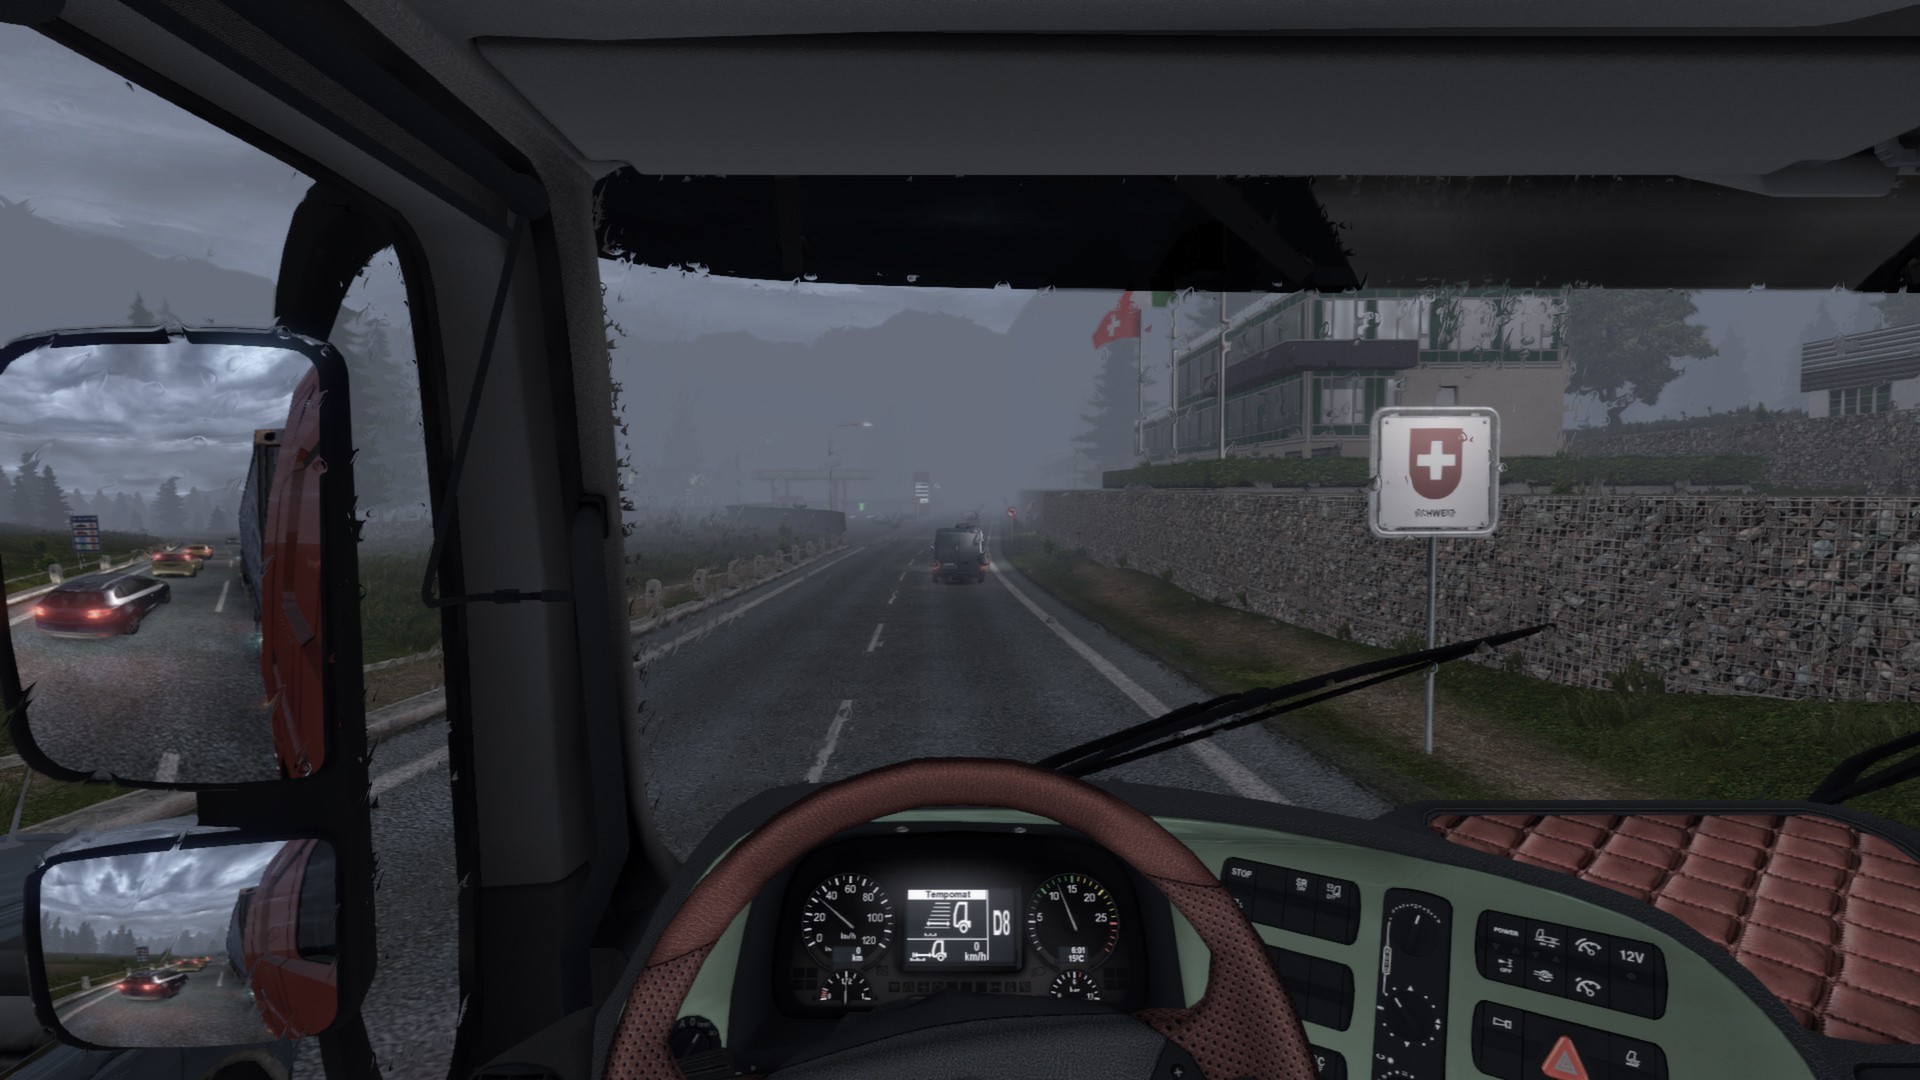 euro truck simulator 2 1.0.0.0 product key